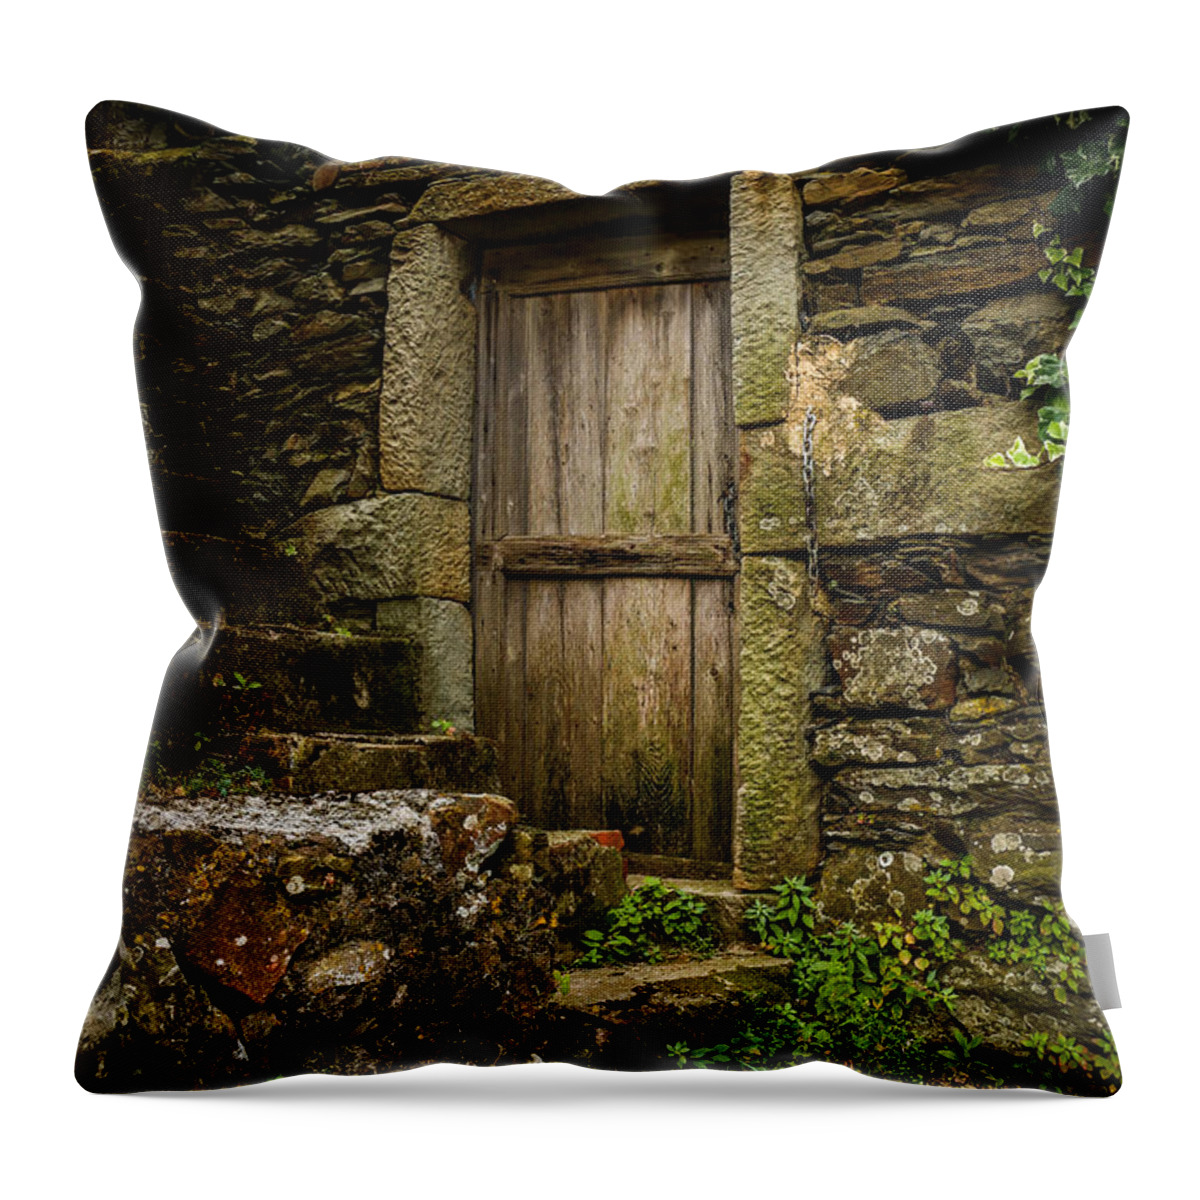 Wooden Door Throw Pillow featuring the photograph Yesterday's Garden Door by Kathleen Scanlan